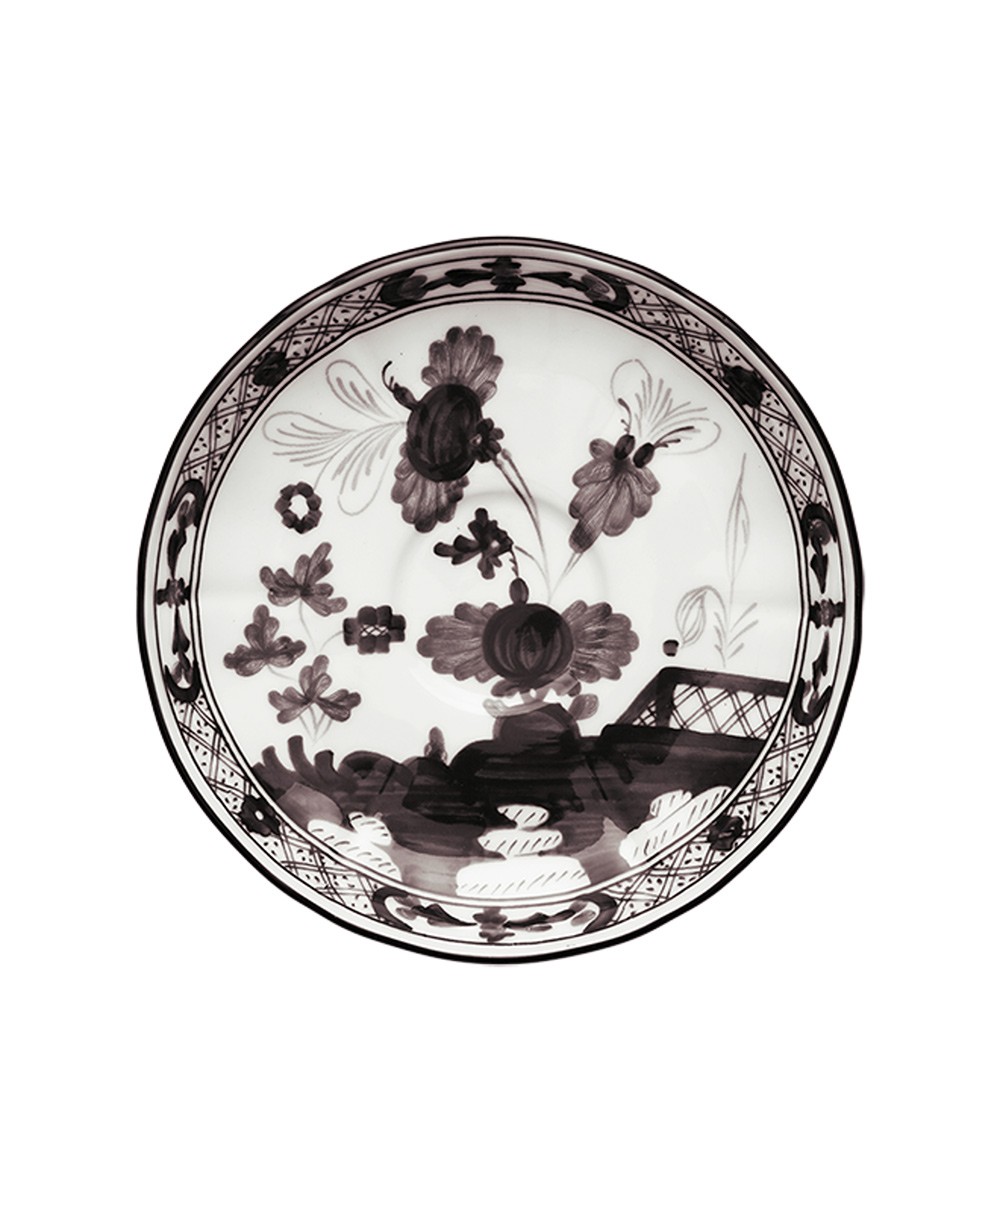 Produktbild der "Oriente Albus Tee Untertasse" von Ginori 1735 im RAUM Concept store